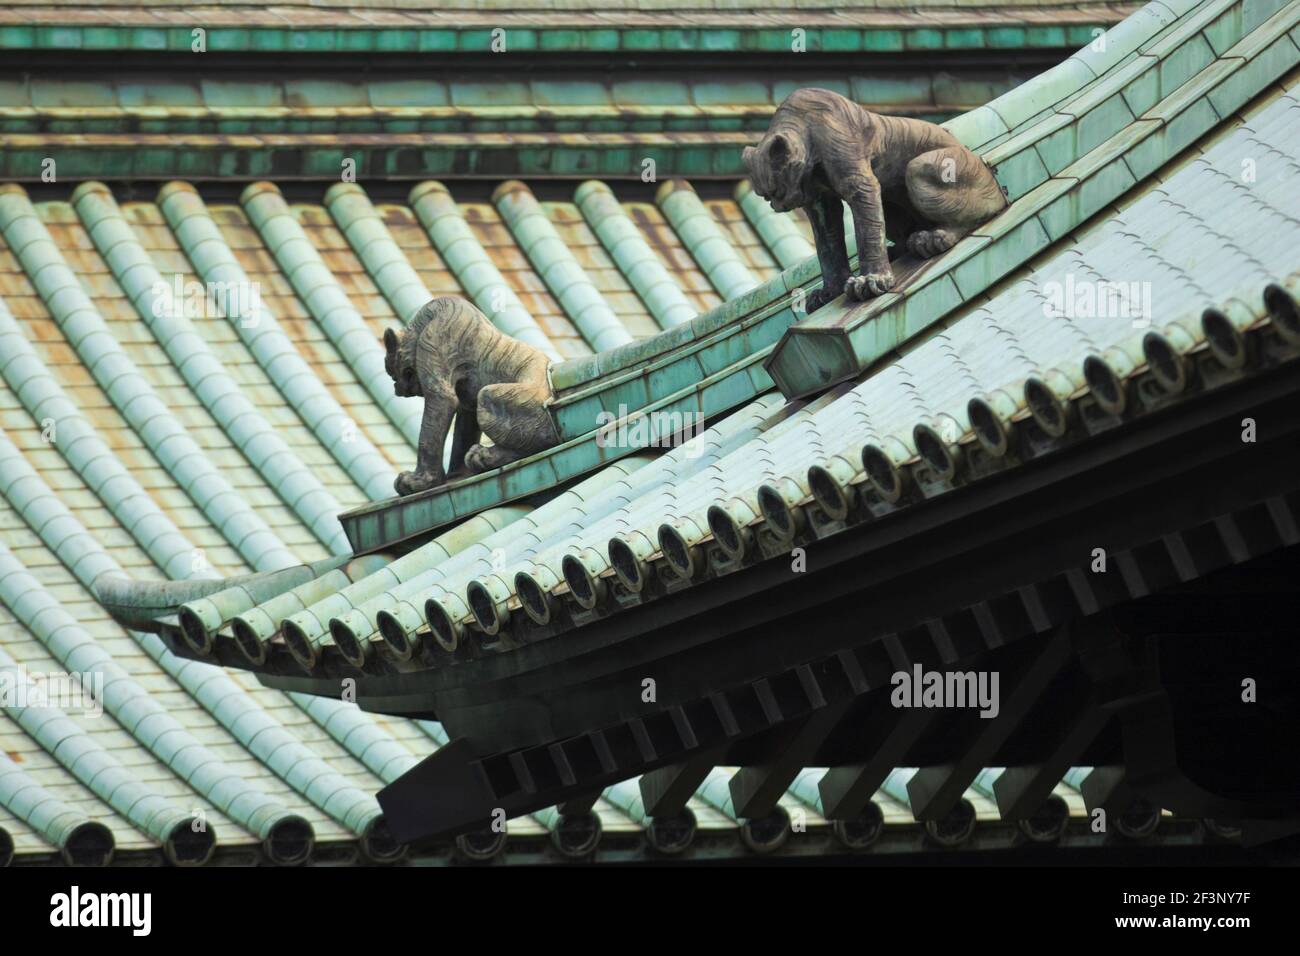 La conception du toit complexe est surveillée par des statues de gardien de lion komainu au temple Yushima-Seido, dans le vieux quartier de Kanda, dans le centre-ville de Tokyo, JAPA Banque D'Images